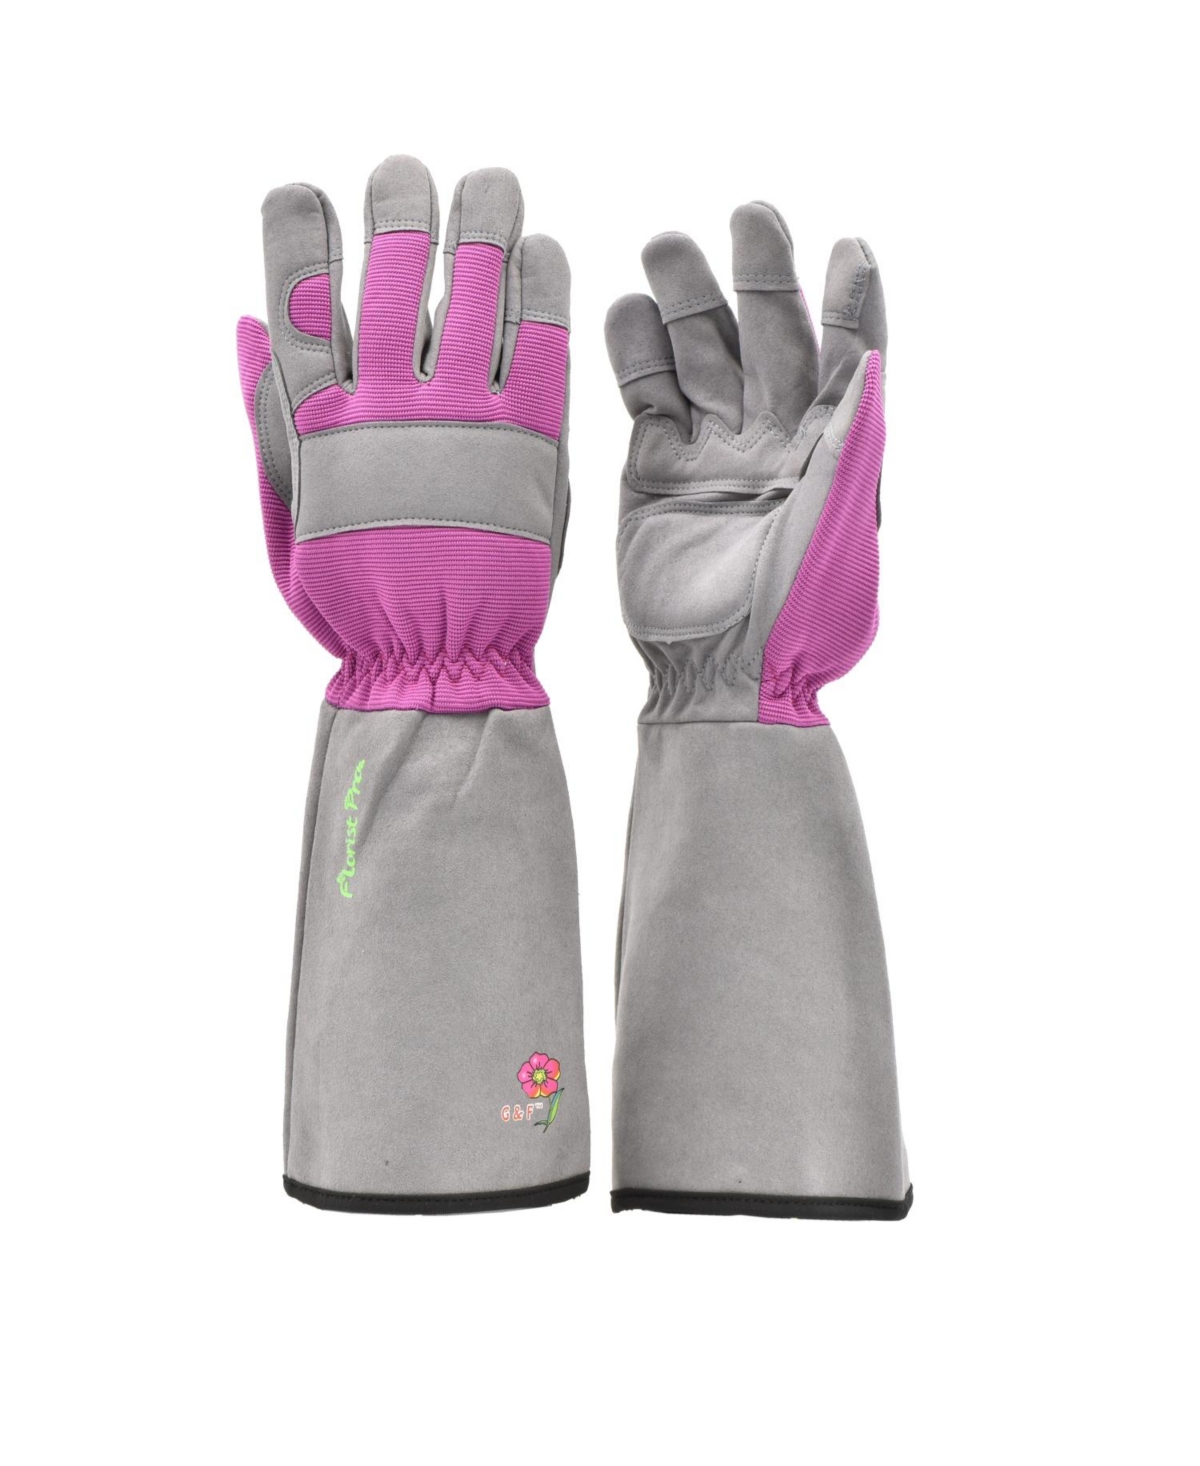 Women's Long Sleeve Rose Gardening Gloves - Pink